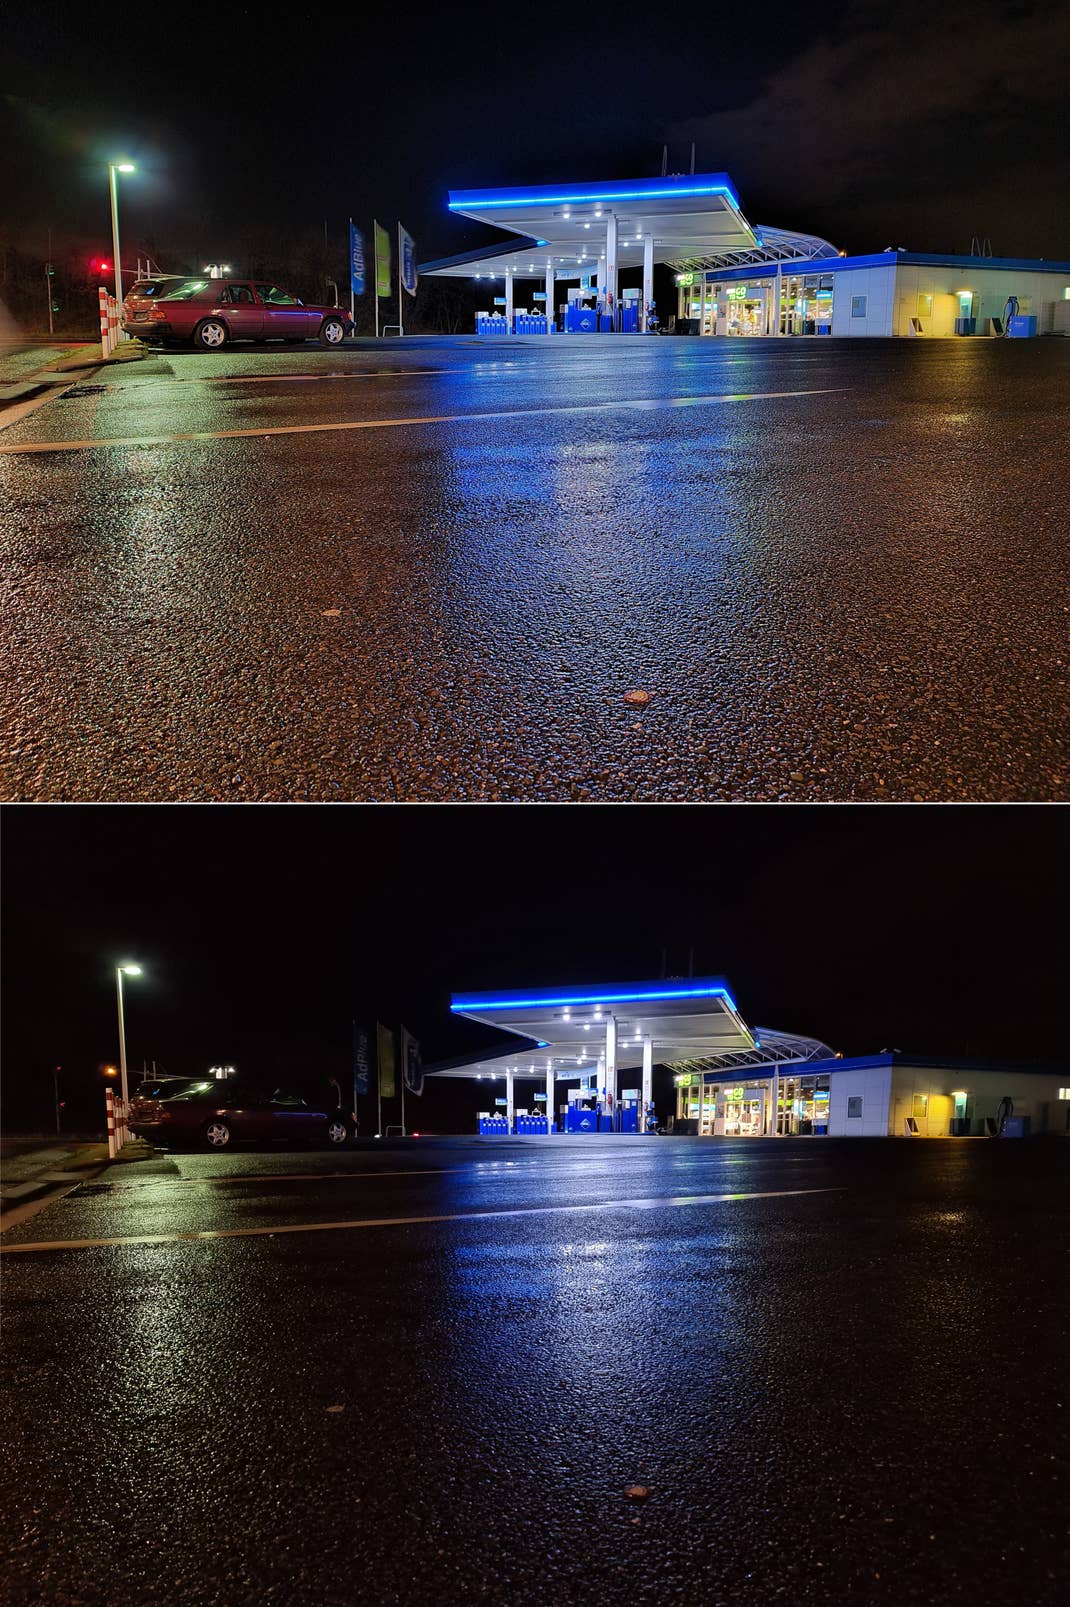 Nachtfotografie: Galaxy S20 Ultra mit eingeschaltetem Nachtmodus (oben) und ohne die Einstellung (unten)